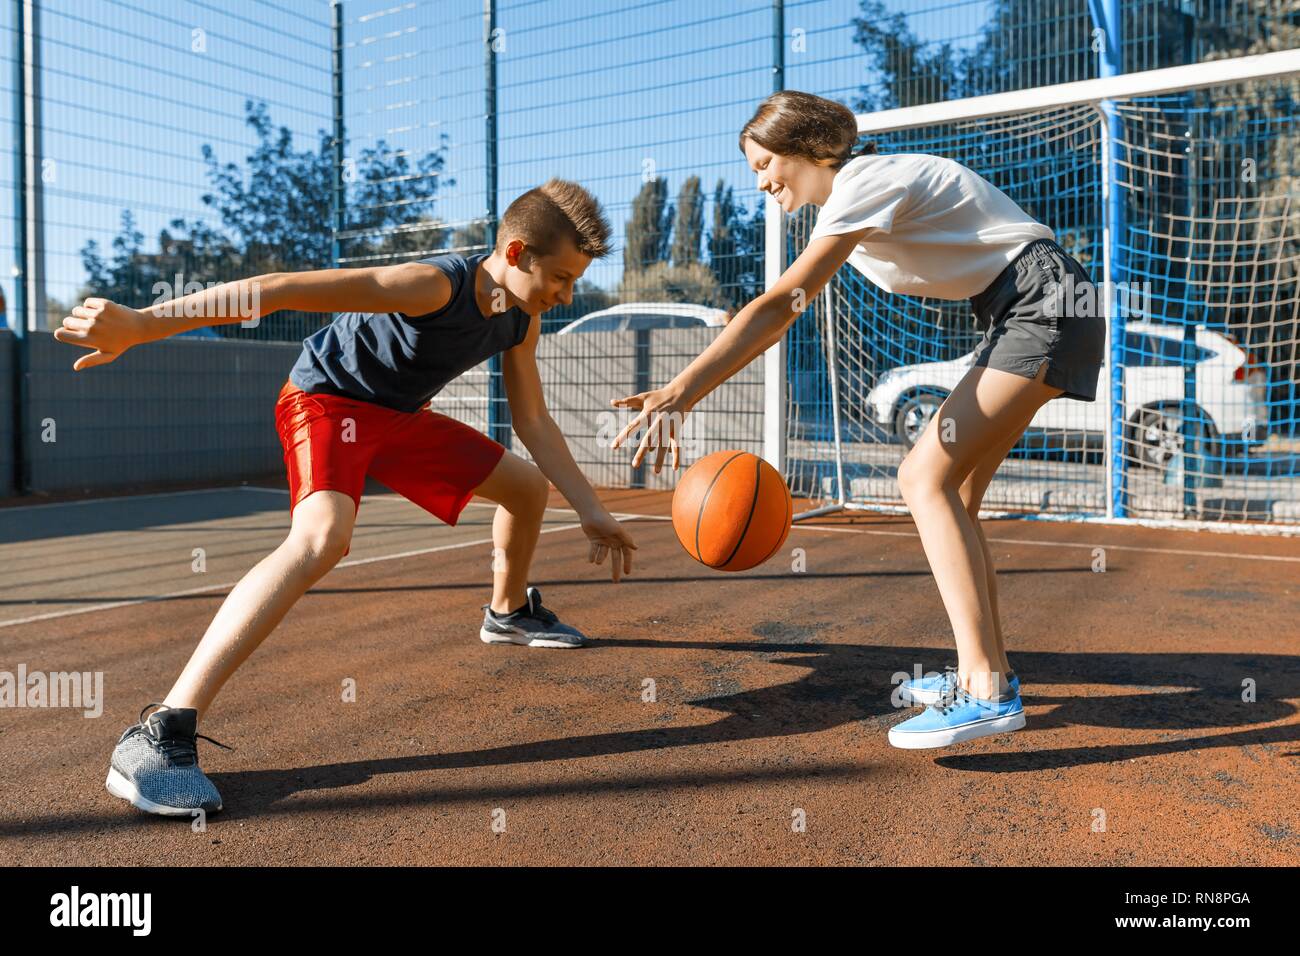 Streetball Basketball Spiel mit zwei Spielern, jugendliche Mädchen und junge mit Ball, outdoor Stadt Basketballplatz Stockfoto